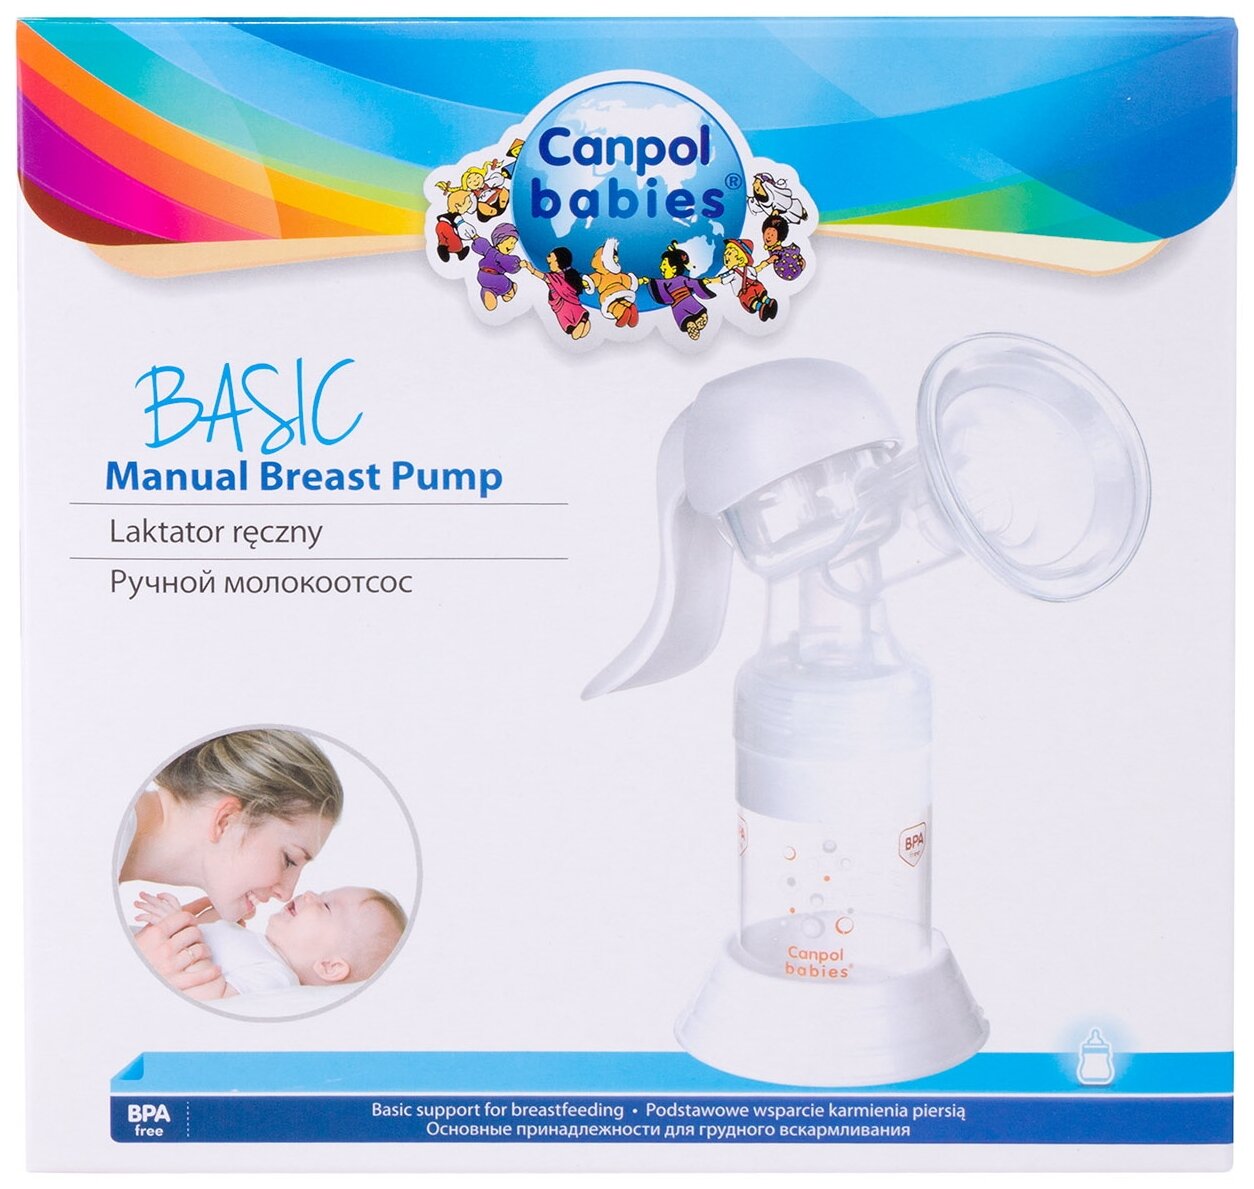 Молокоотсос Canpol babies (Канпол бейбис) Premium ручной Canpol Sp.z o.o. - фото №4